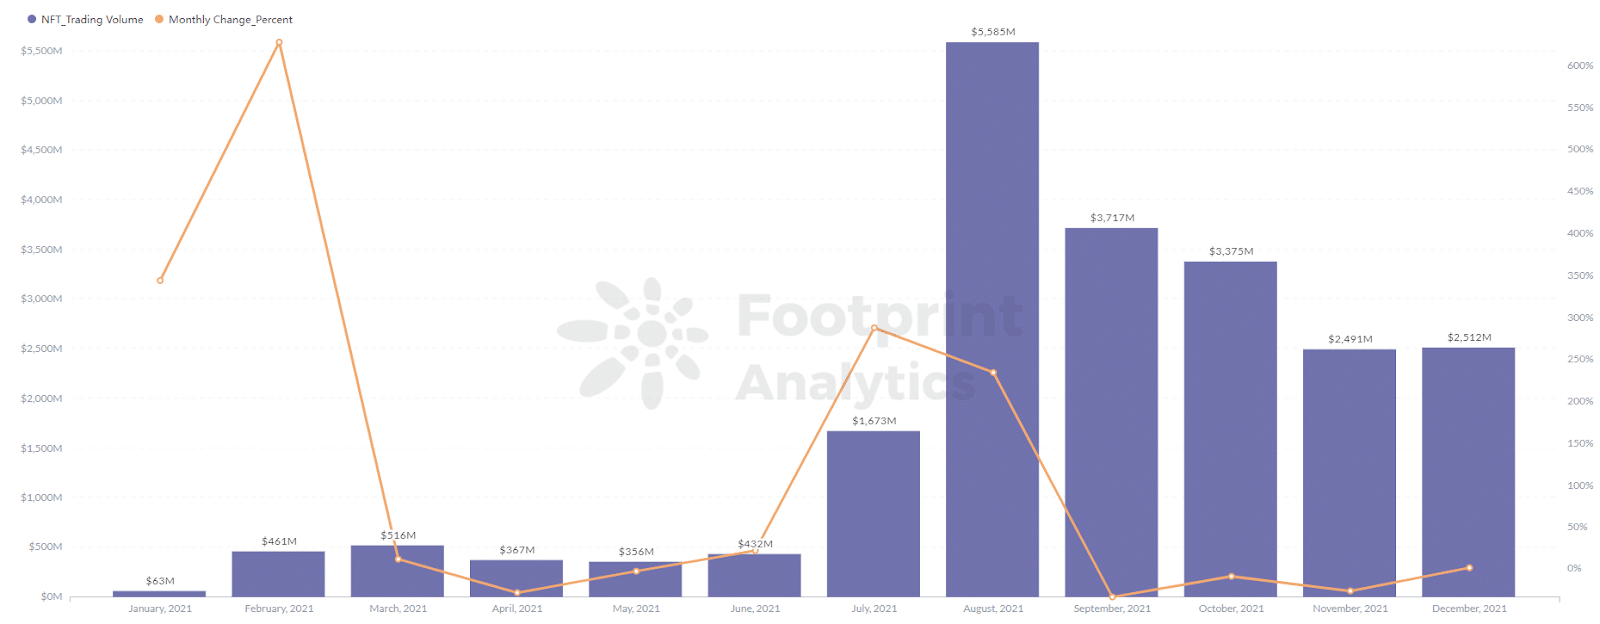 Footprint Analytics - Торговый объем проектов НФТ достиг пика в 5,586 млн. в августе